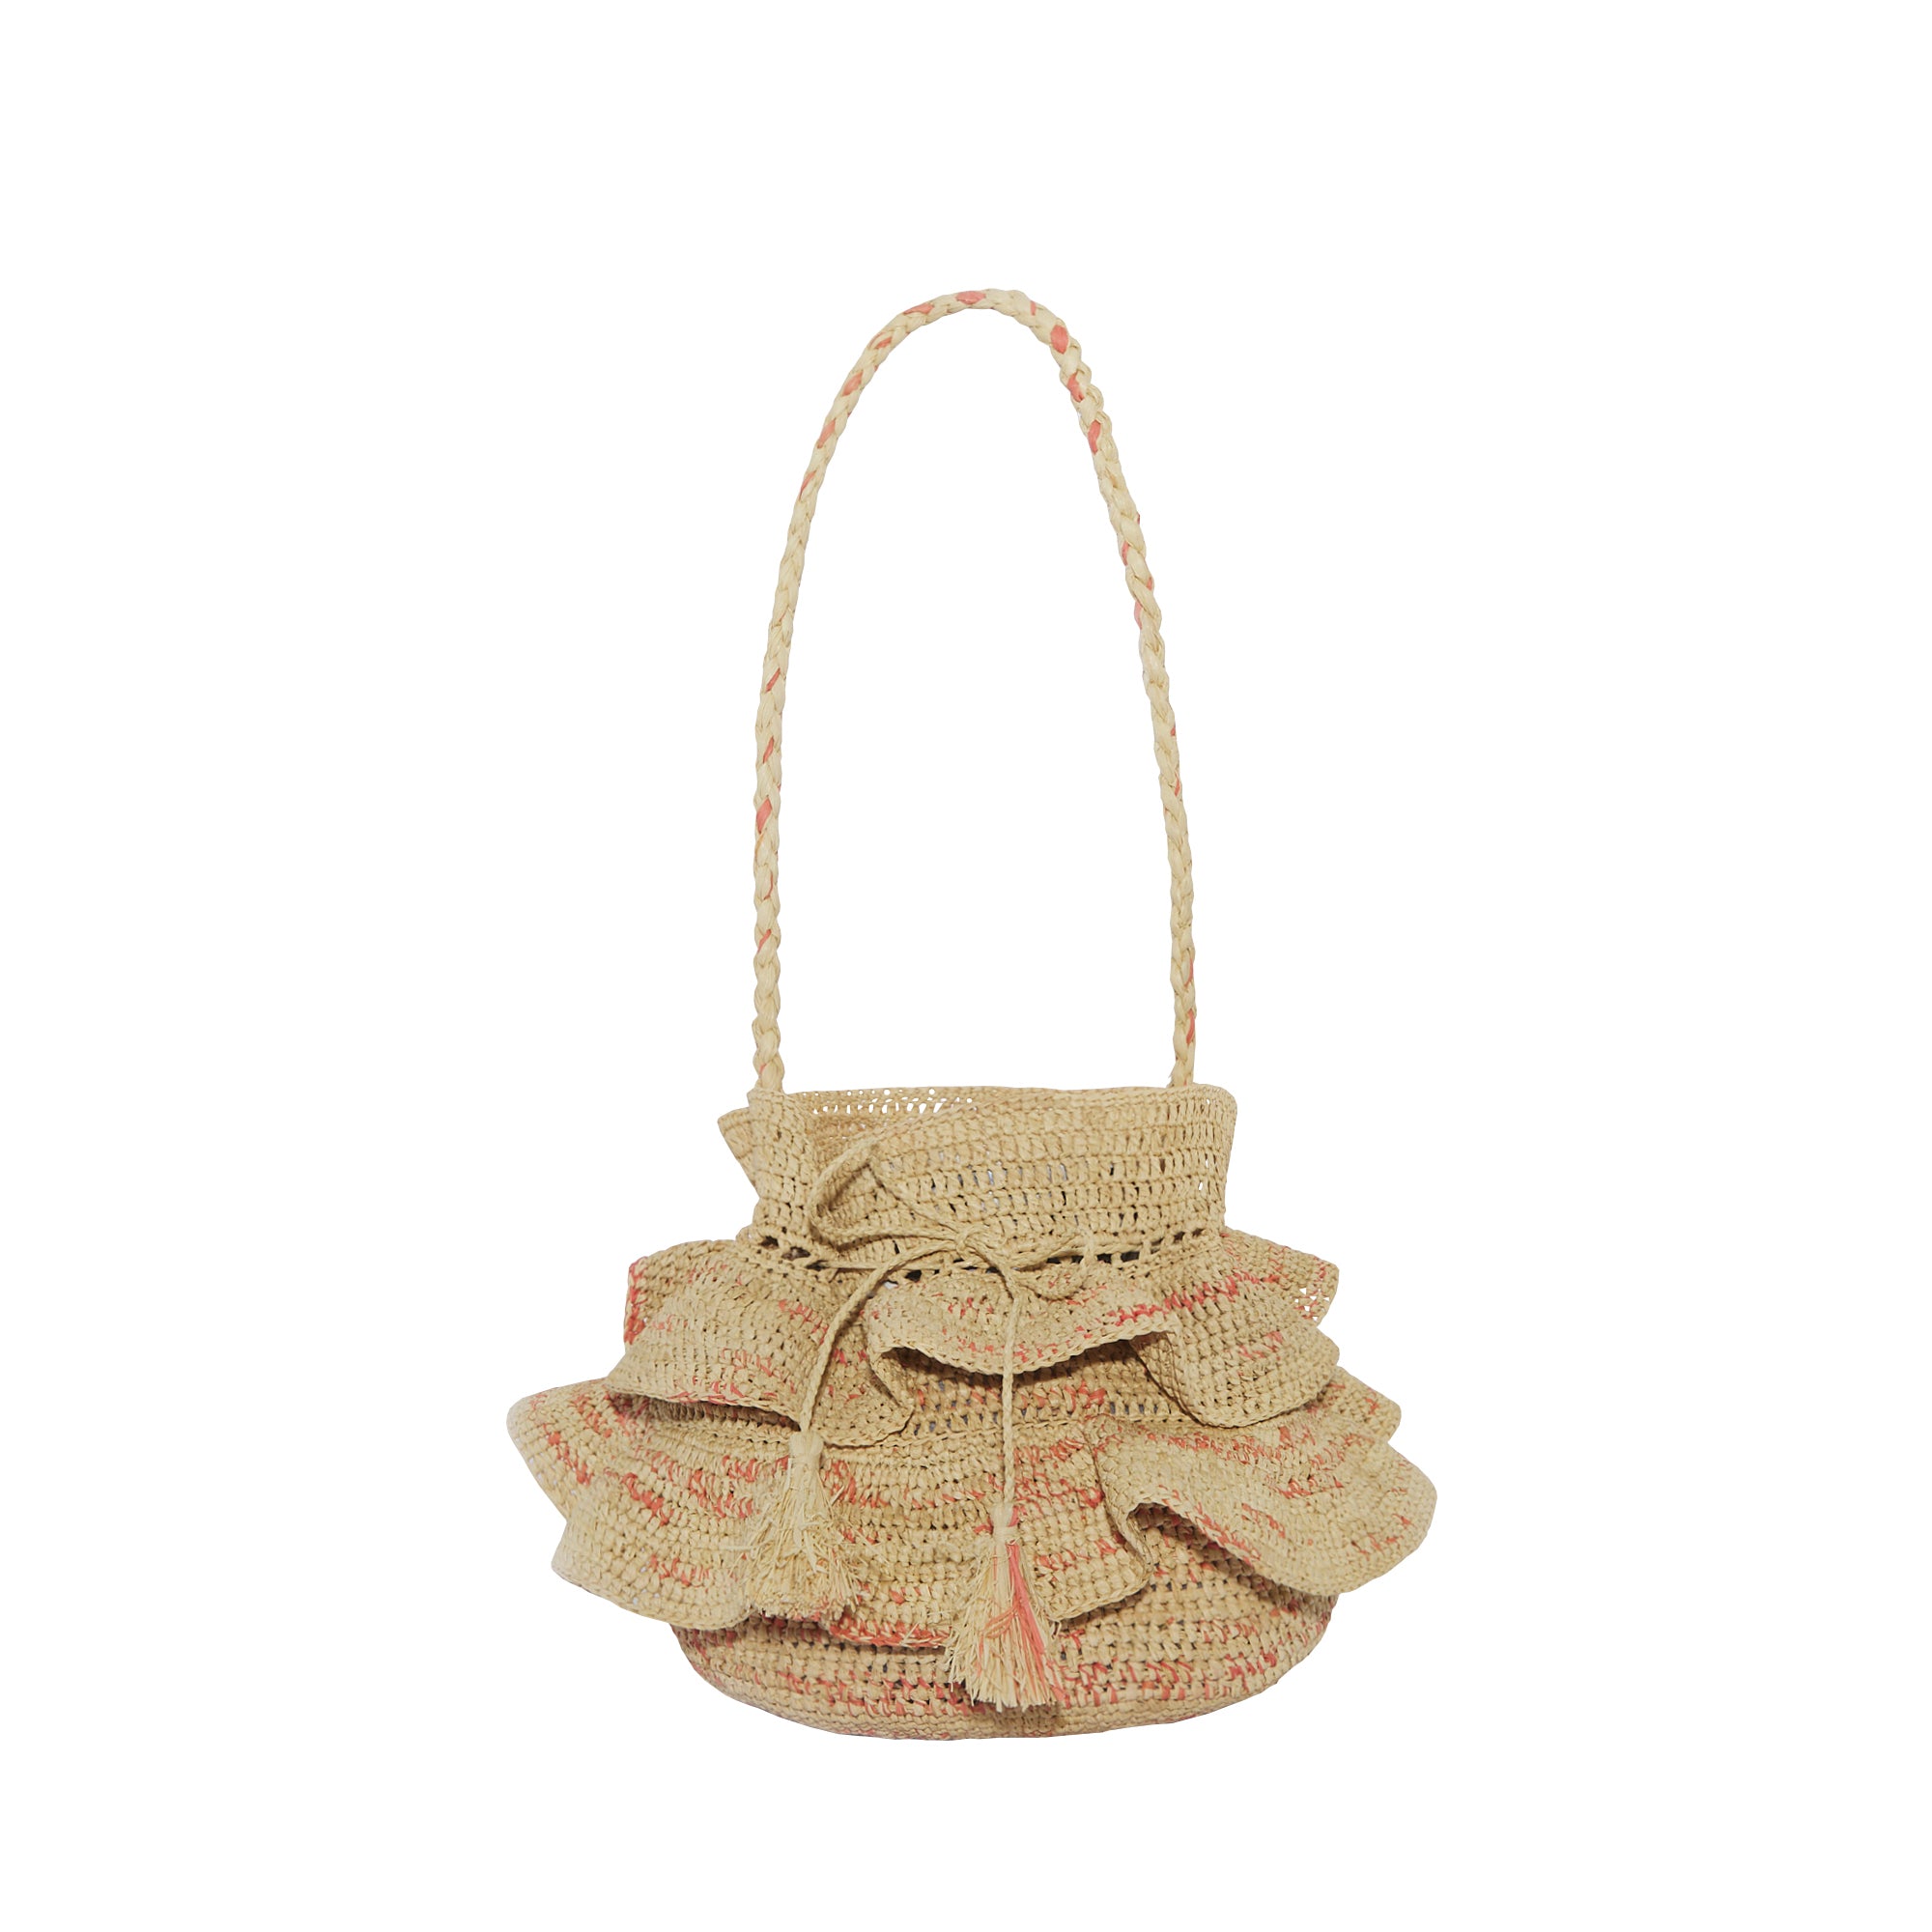 Women's bag with ruffles, raffia